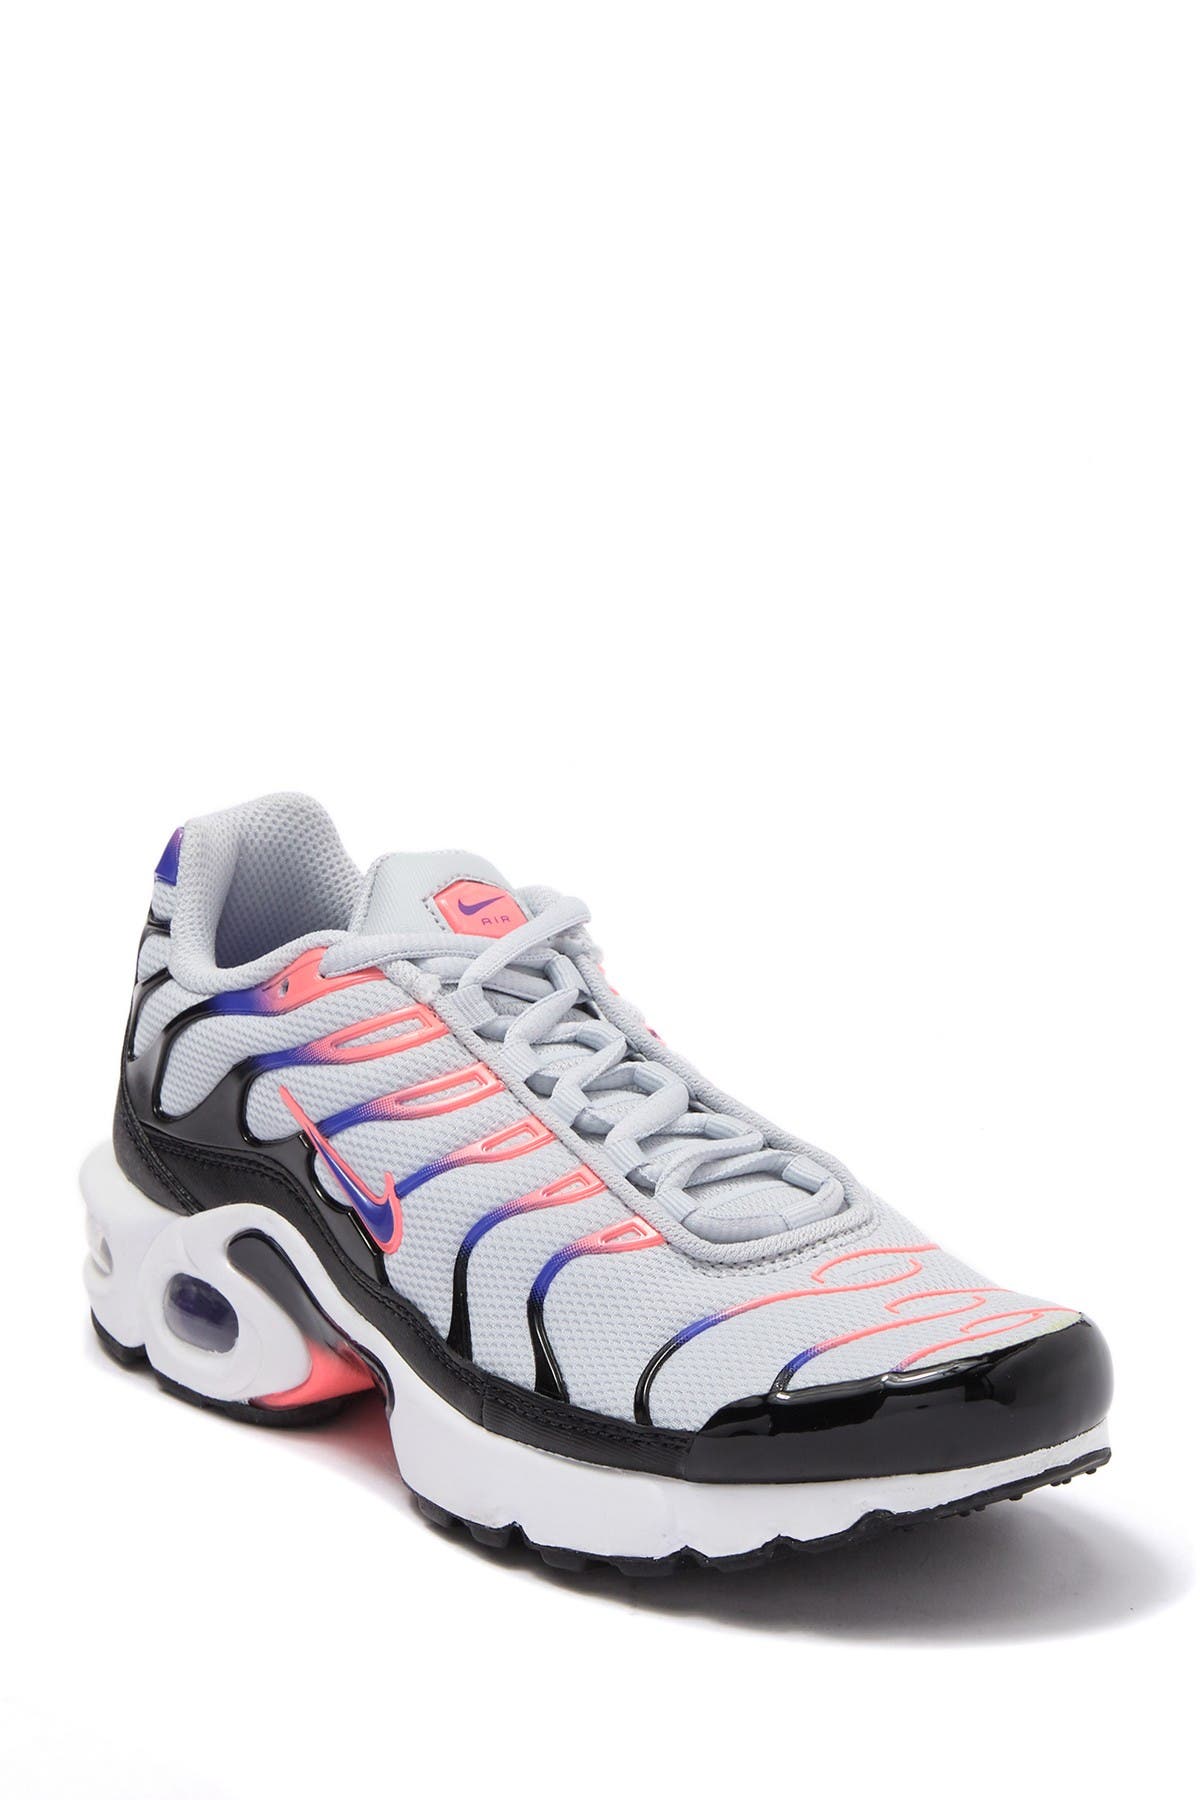 Nike | Air Max Plus GS Sneaker 